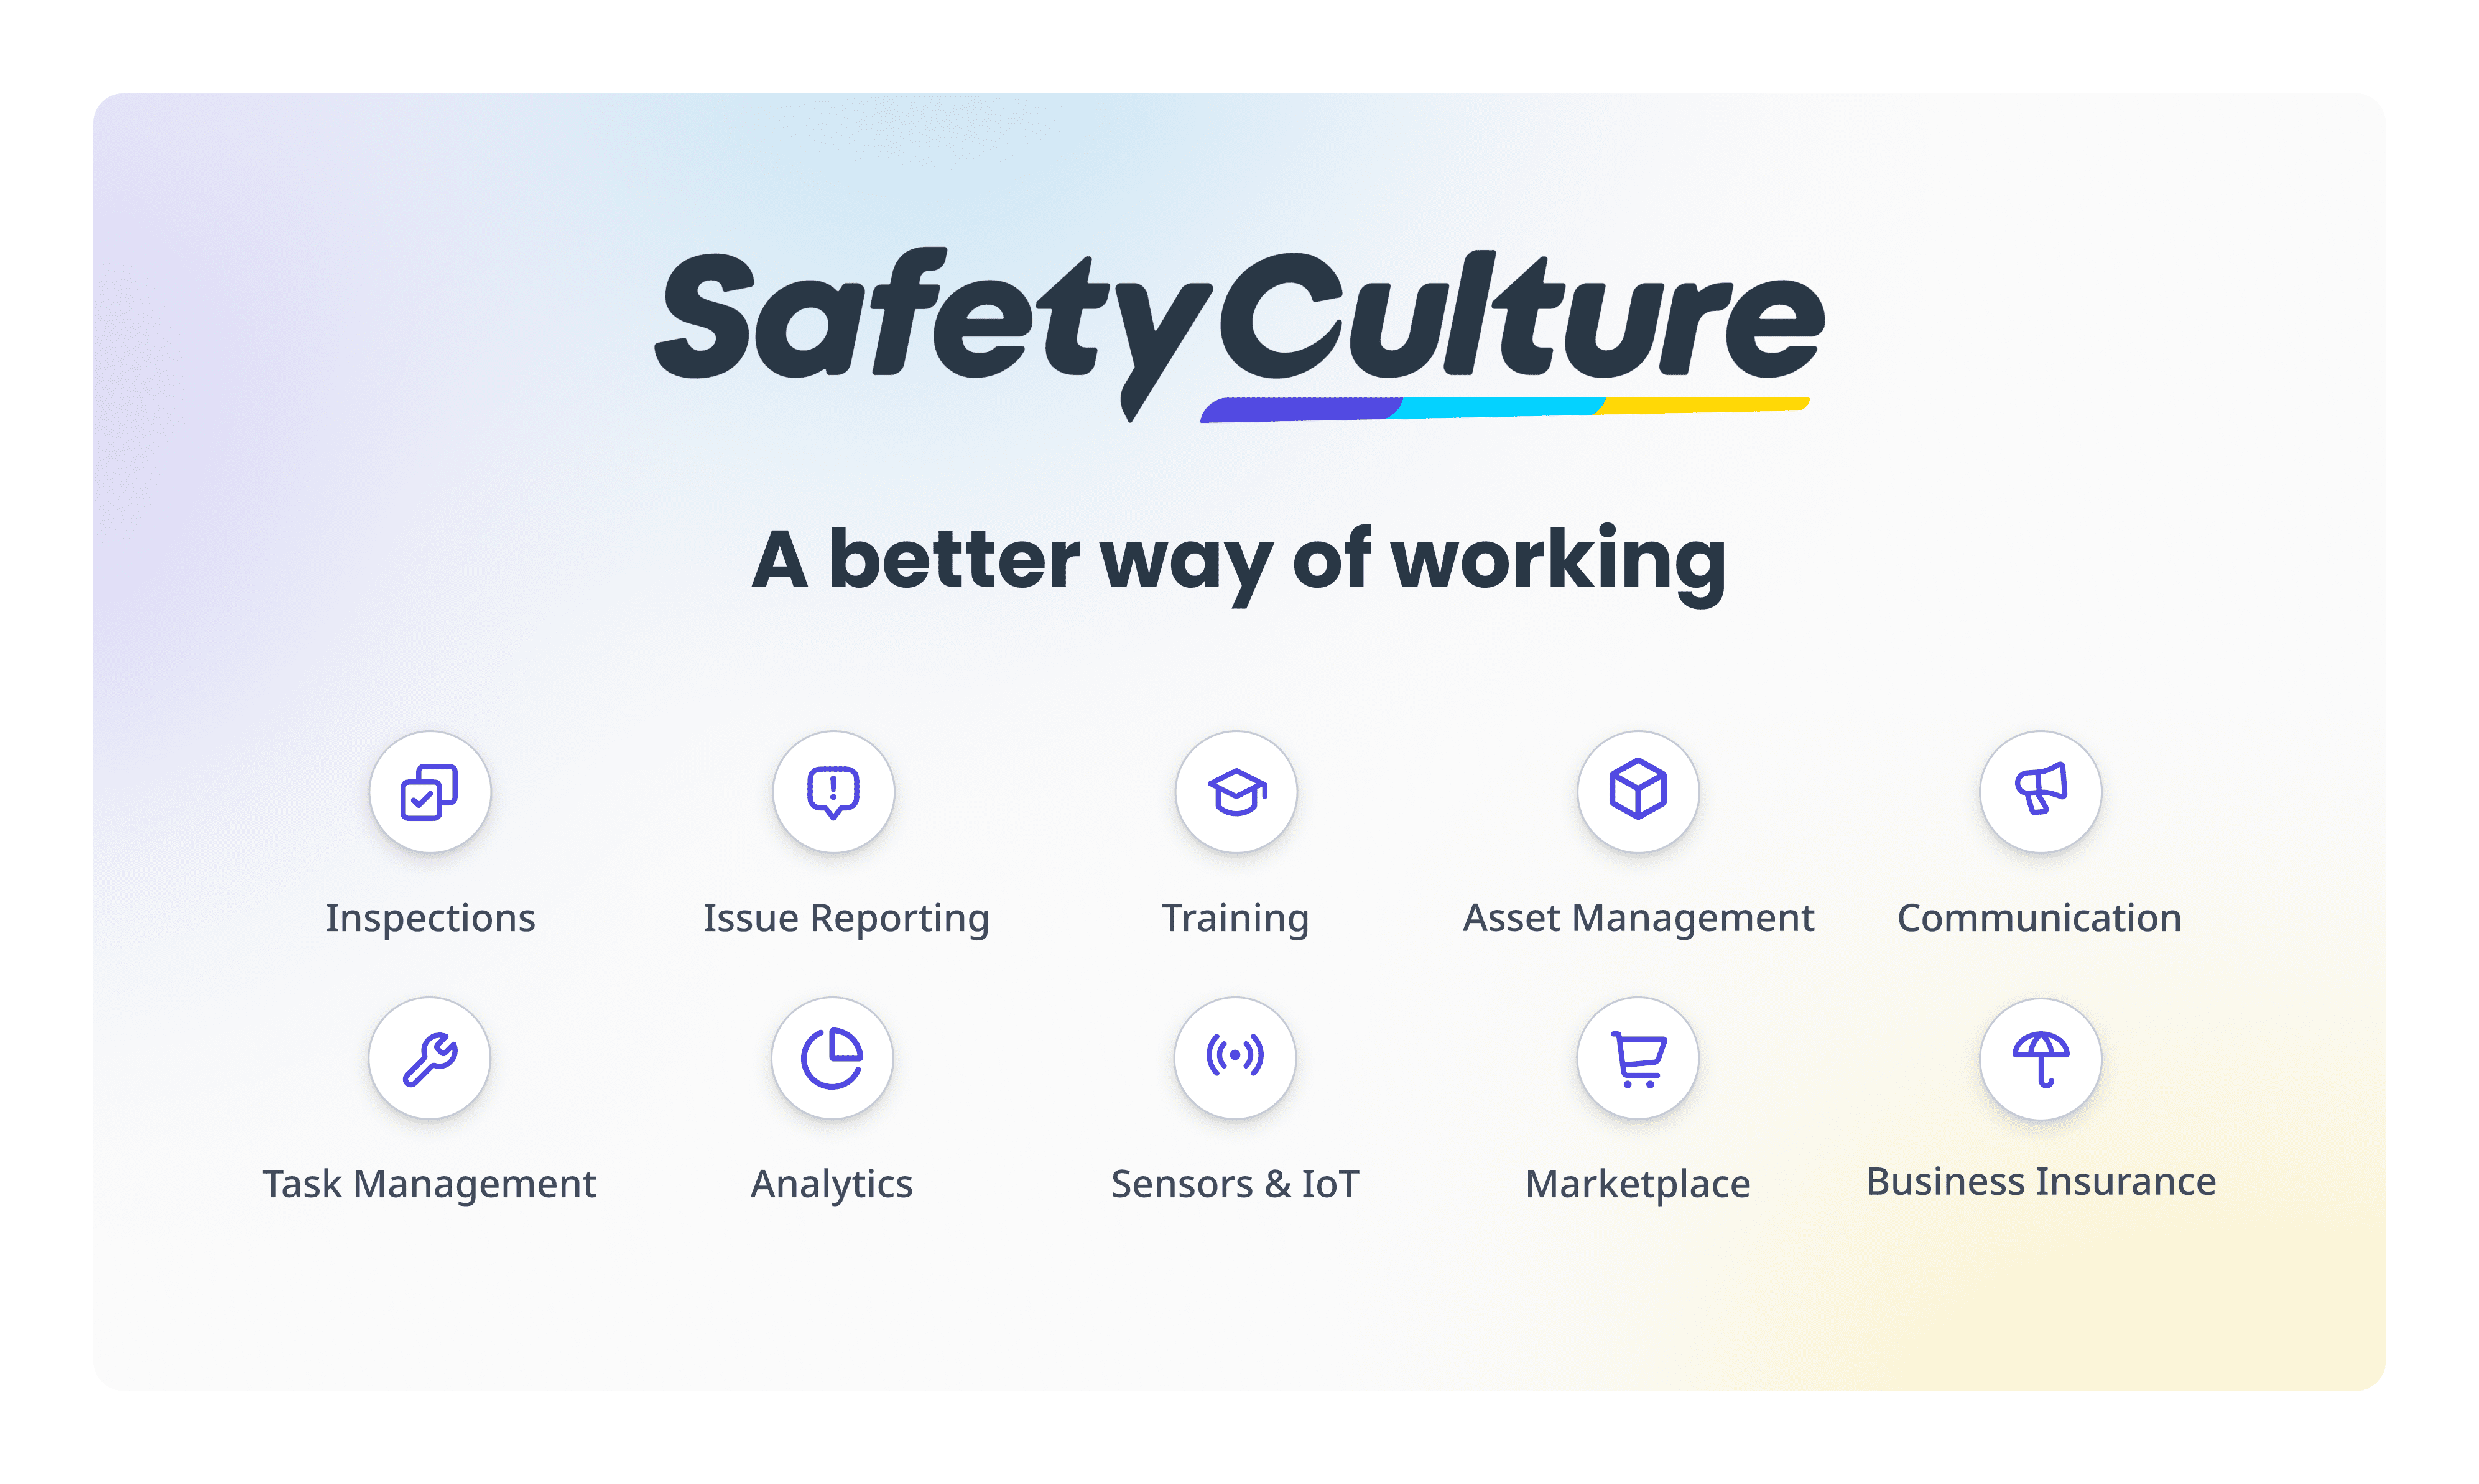 SafetyCulture platform features